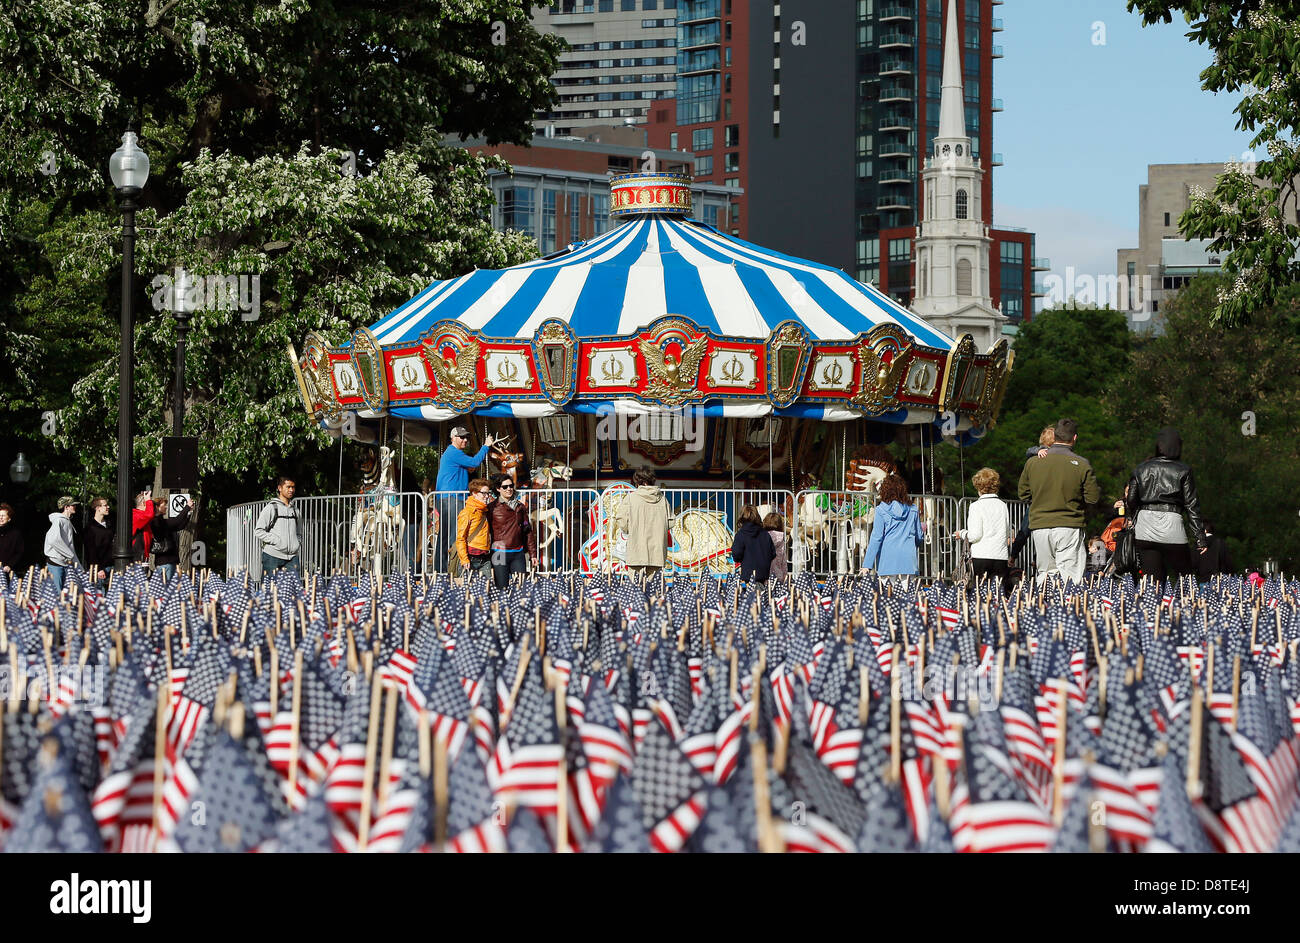 Karussell auf Boston Common, Boston, Massachusetts, mit einem Meer von Fahnen für Memorial Day Stockfoto